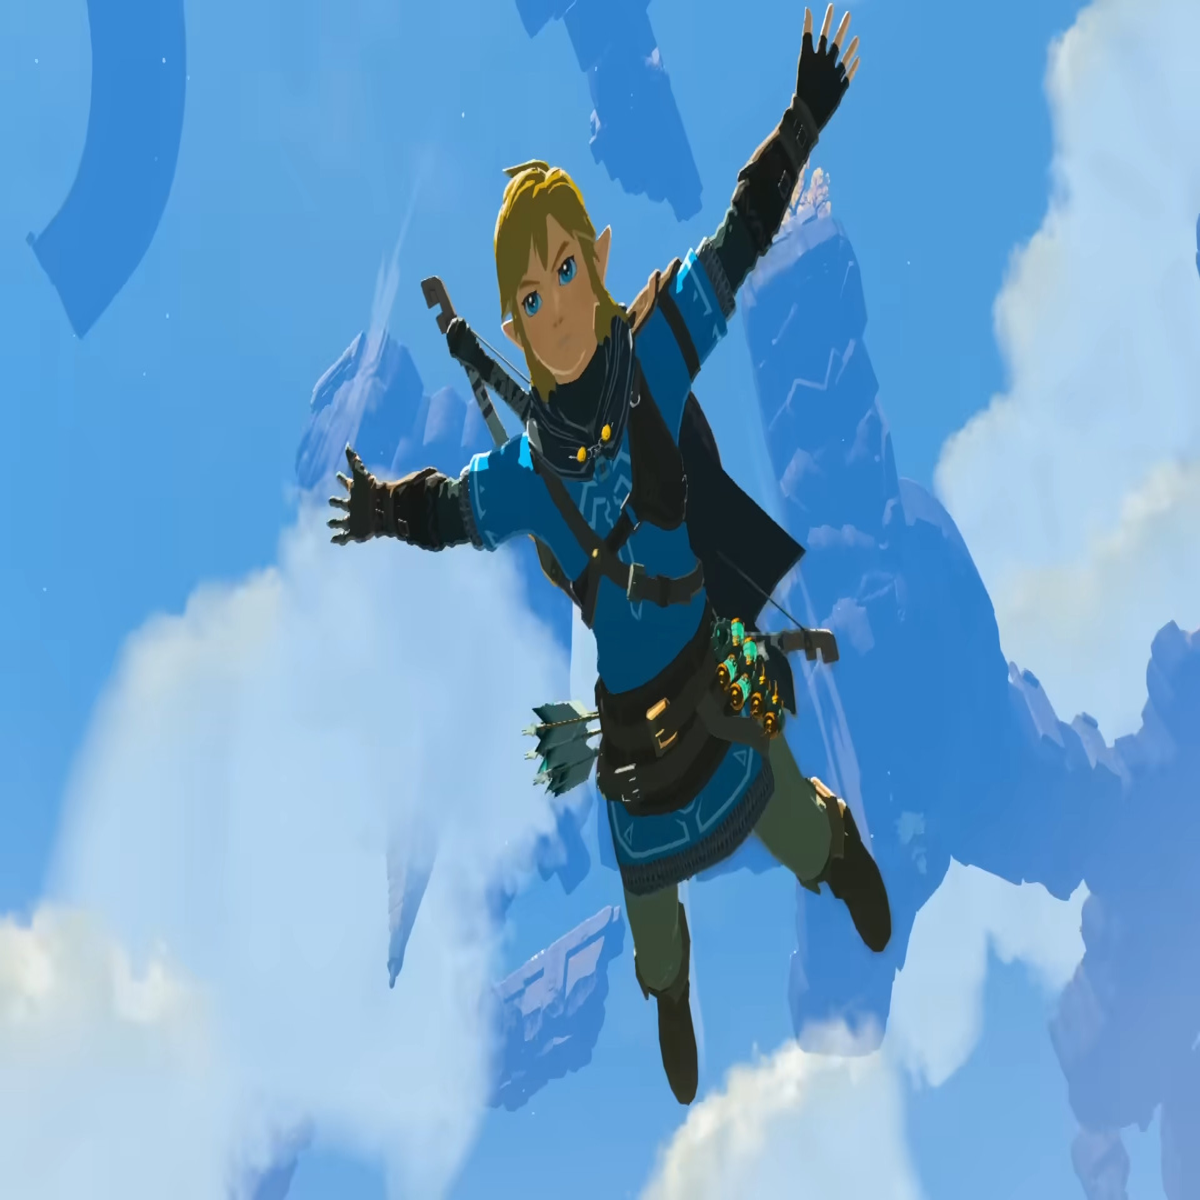 metacritic on X: Legend of Zelda: Breath of the Wild